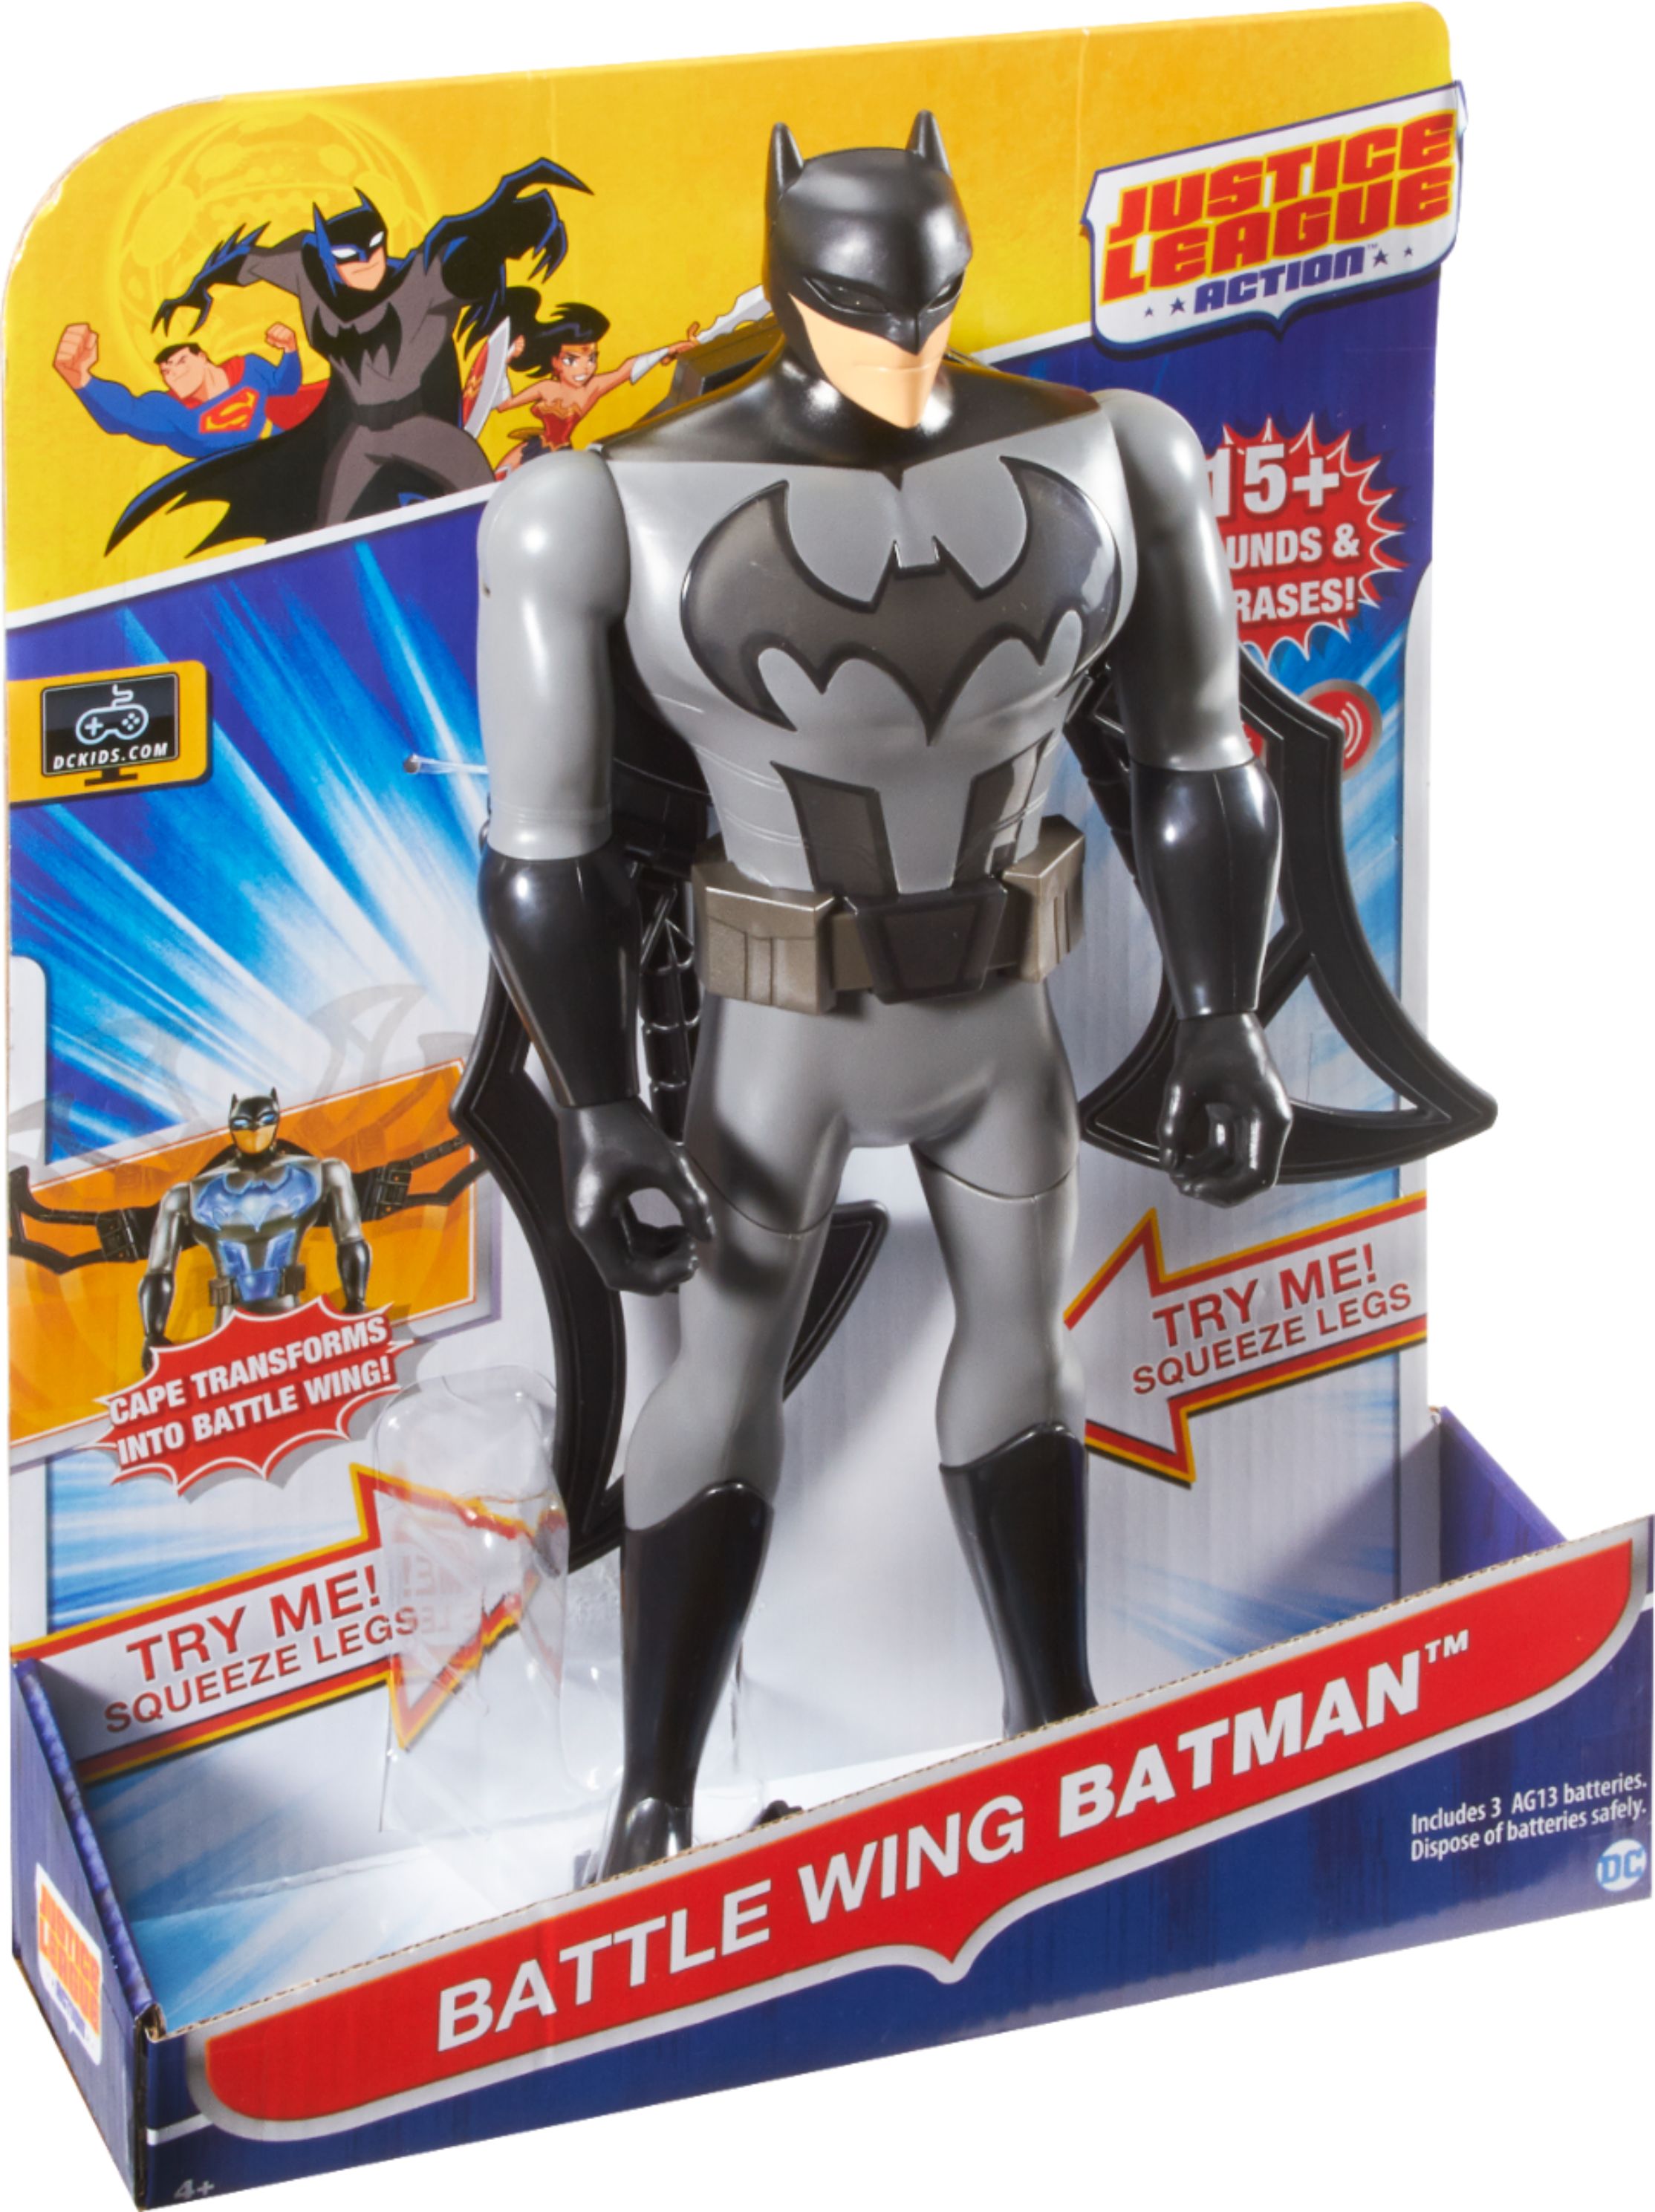 Soap Studios B.Wing X DC Comics Batman 4 Collectable Figure - Zavvi UK  Exclusive